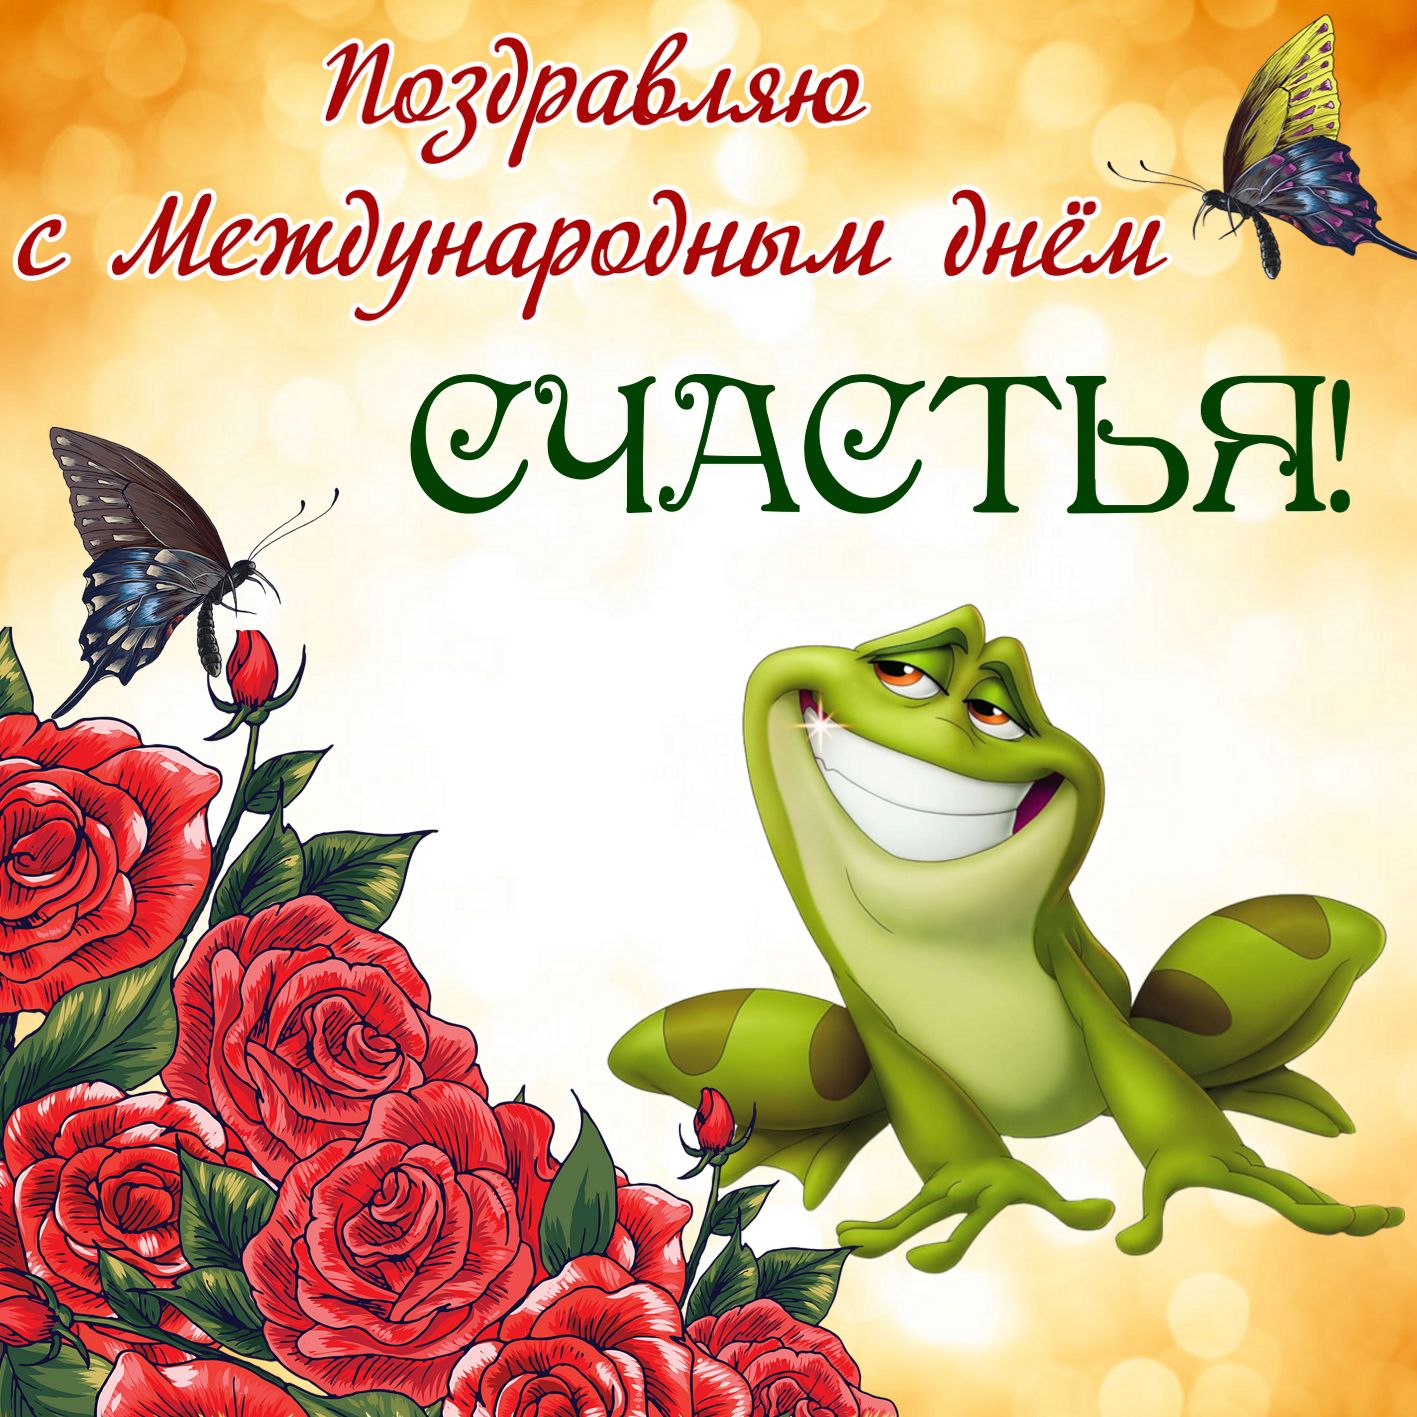 Международный день счастья , открытка с днём счастья , цветы. Открытка ,картинка с днём счастья ,международныйдень счастья 20 марта ,на открытке изображены лягушка,красивые цветы ,яркая открытка к празднику ко дню счастья .